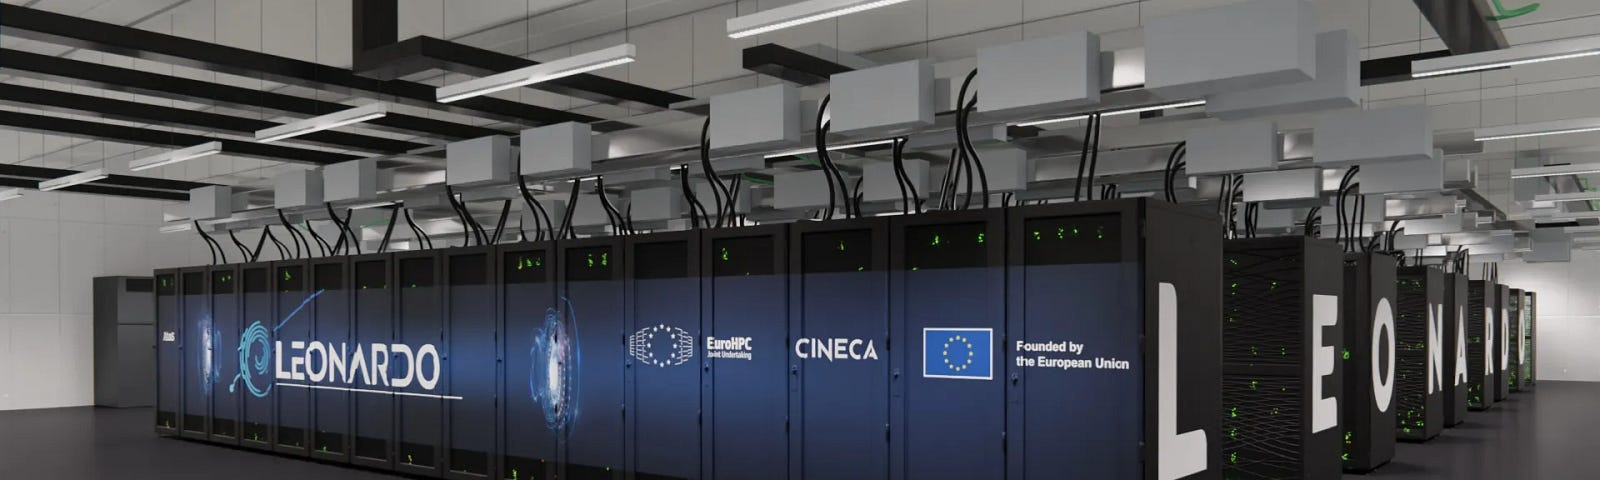 Leonardo Supercomputer in Bologna